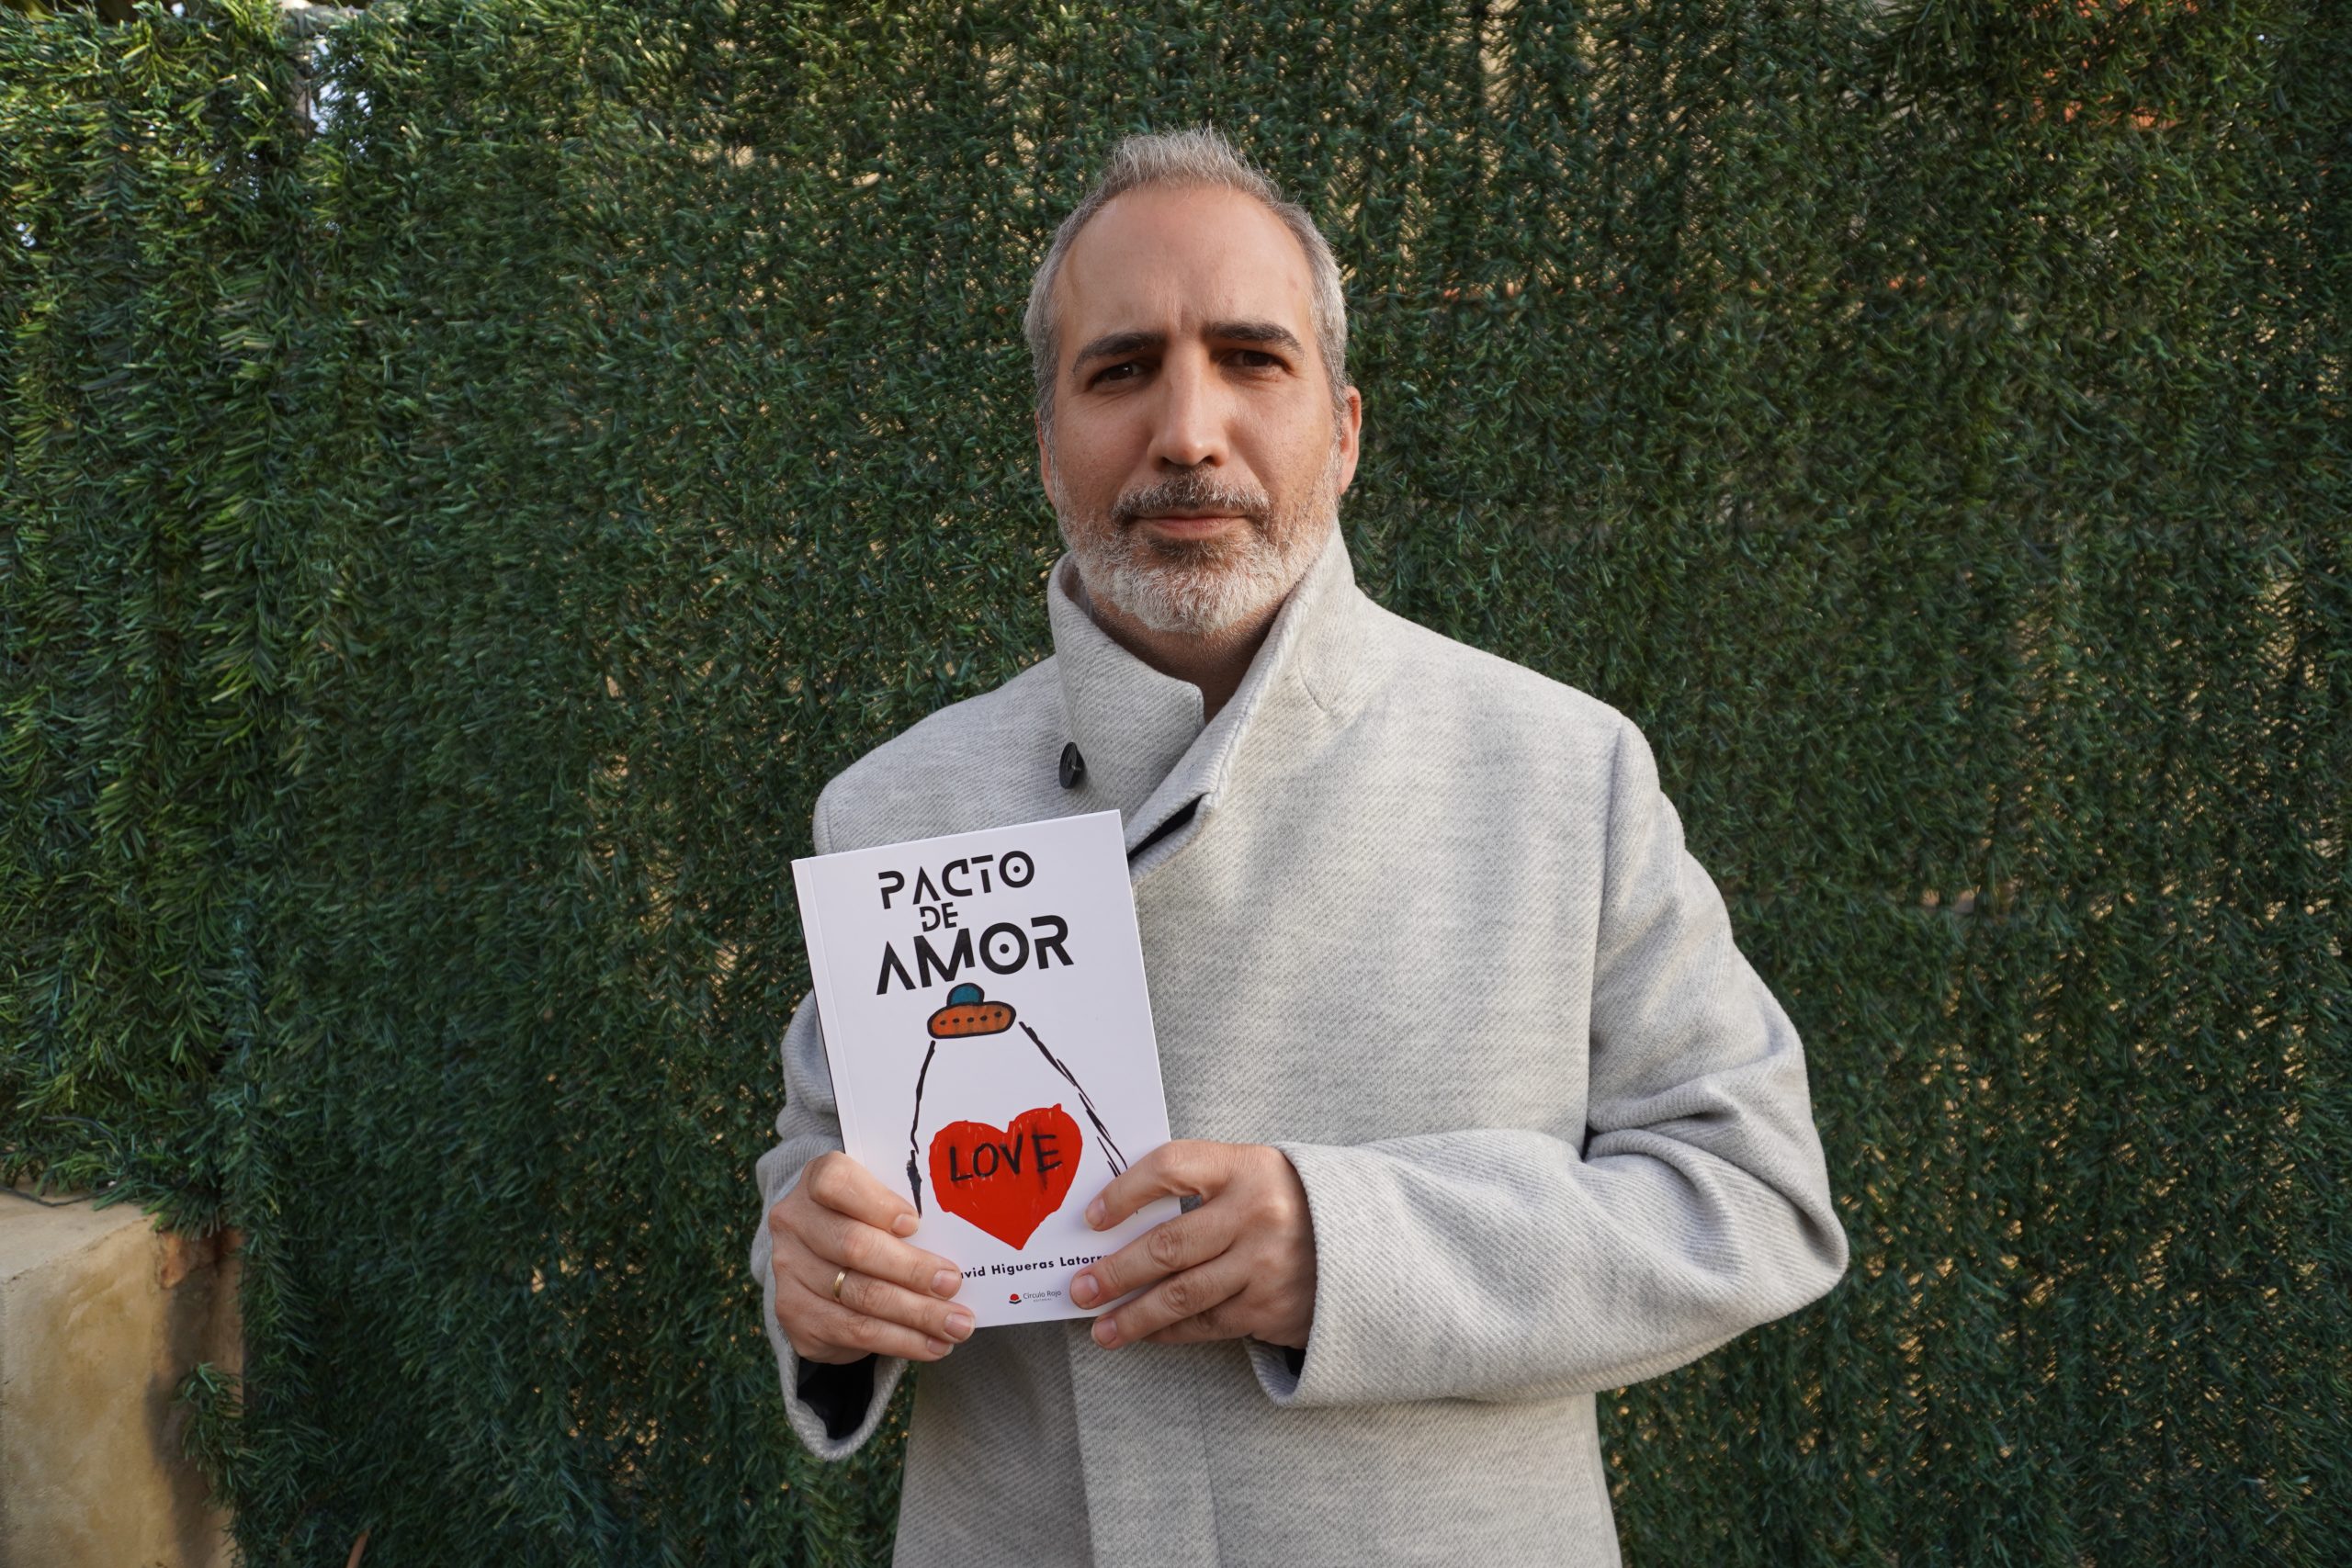 “Pacto de amor”, ópera prima del escritor David Higueras Latorre